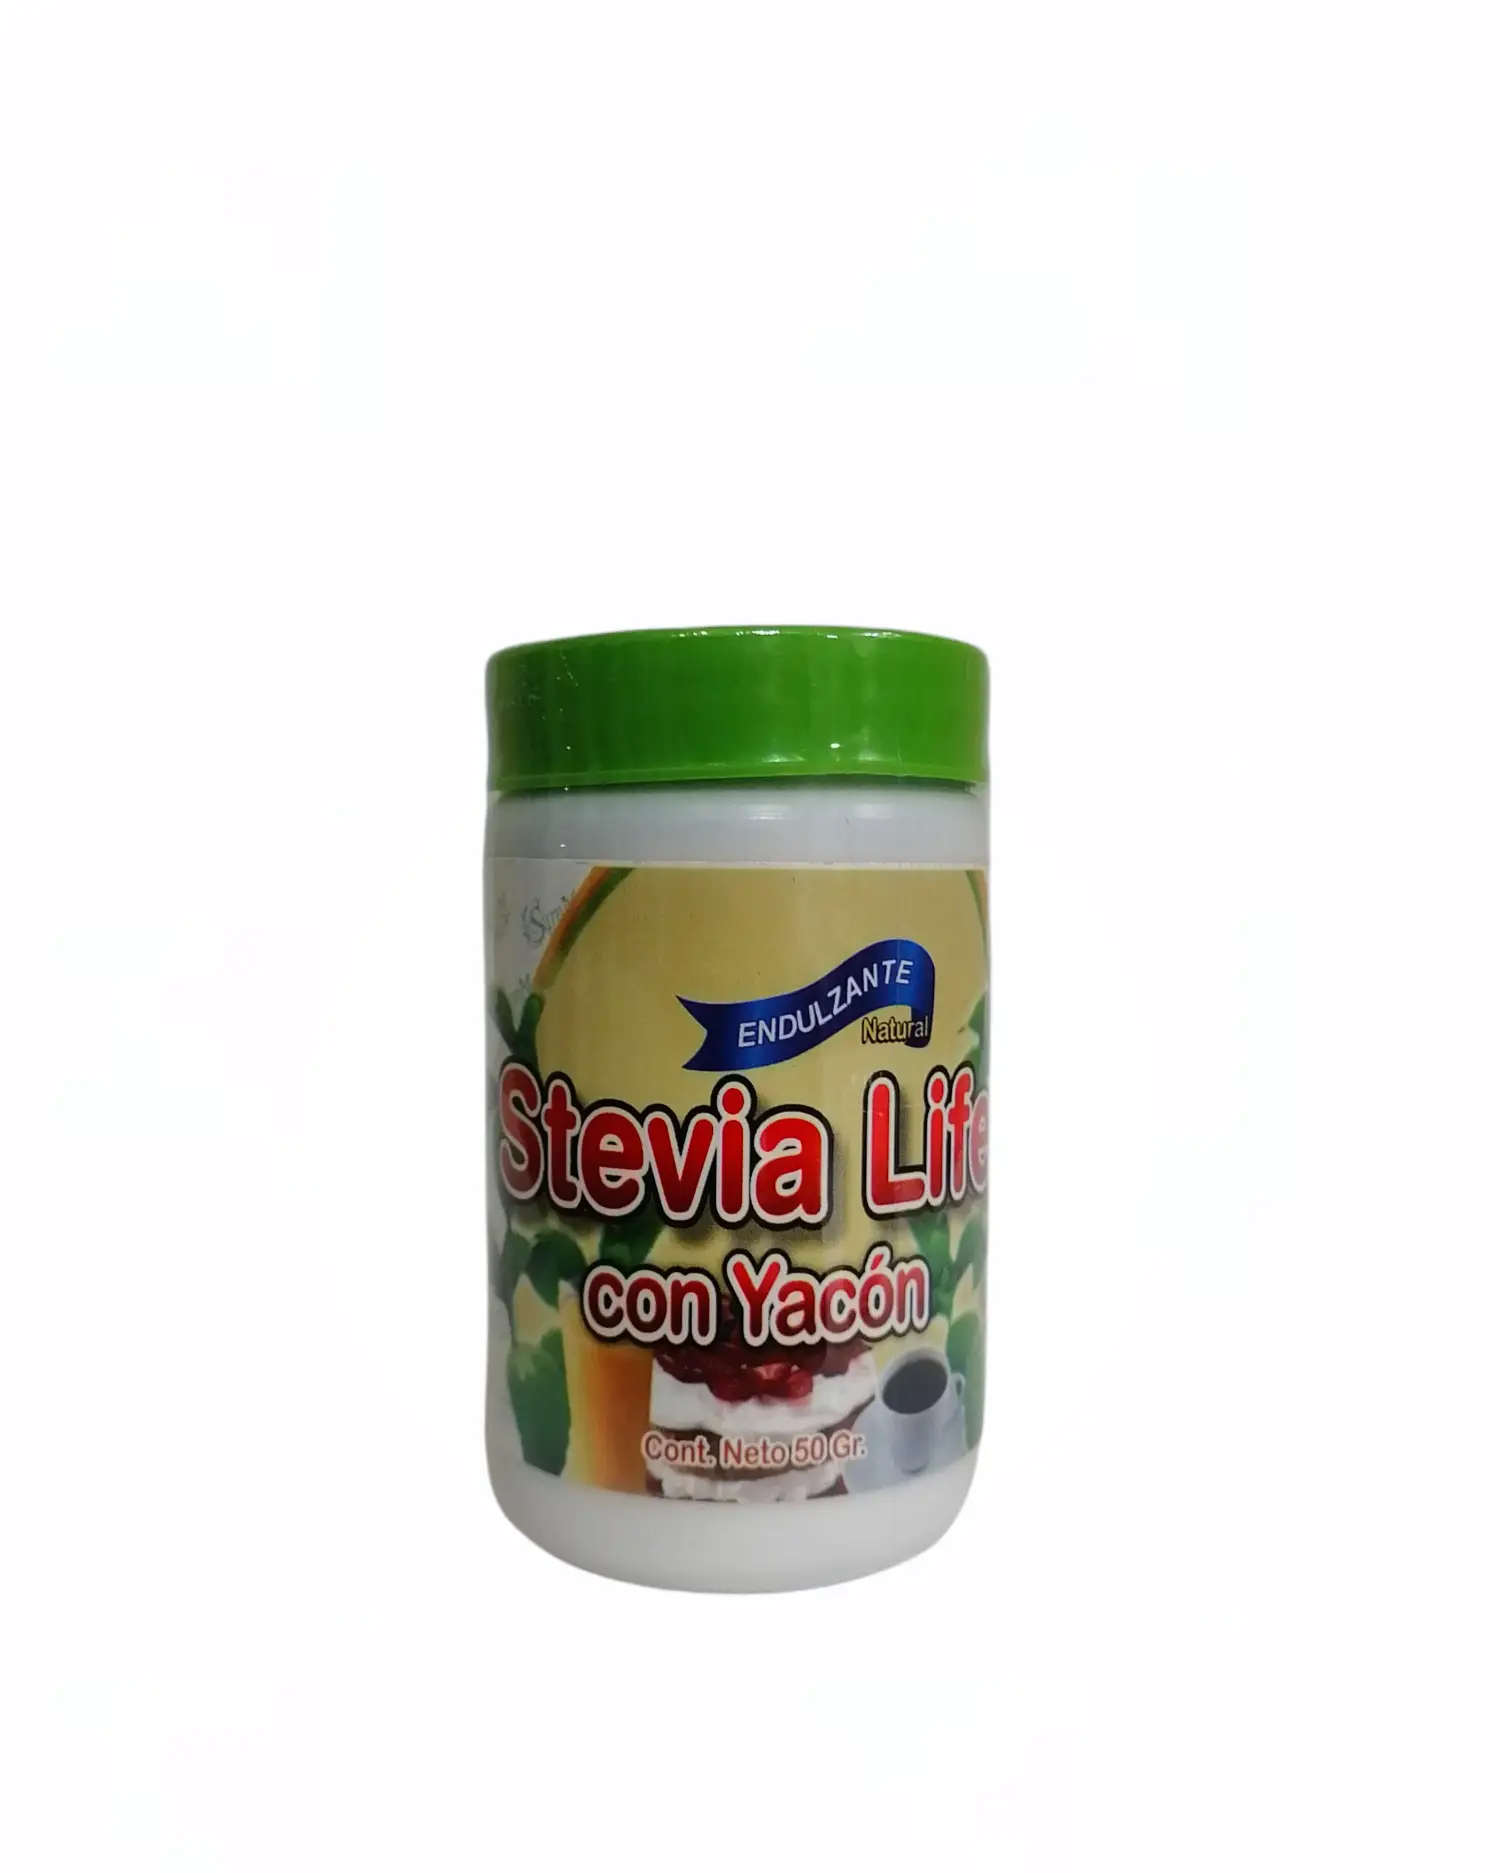 stevia-life-con-yacon-frasco-50-gr-eco-naturall